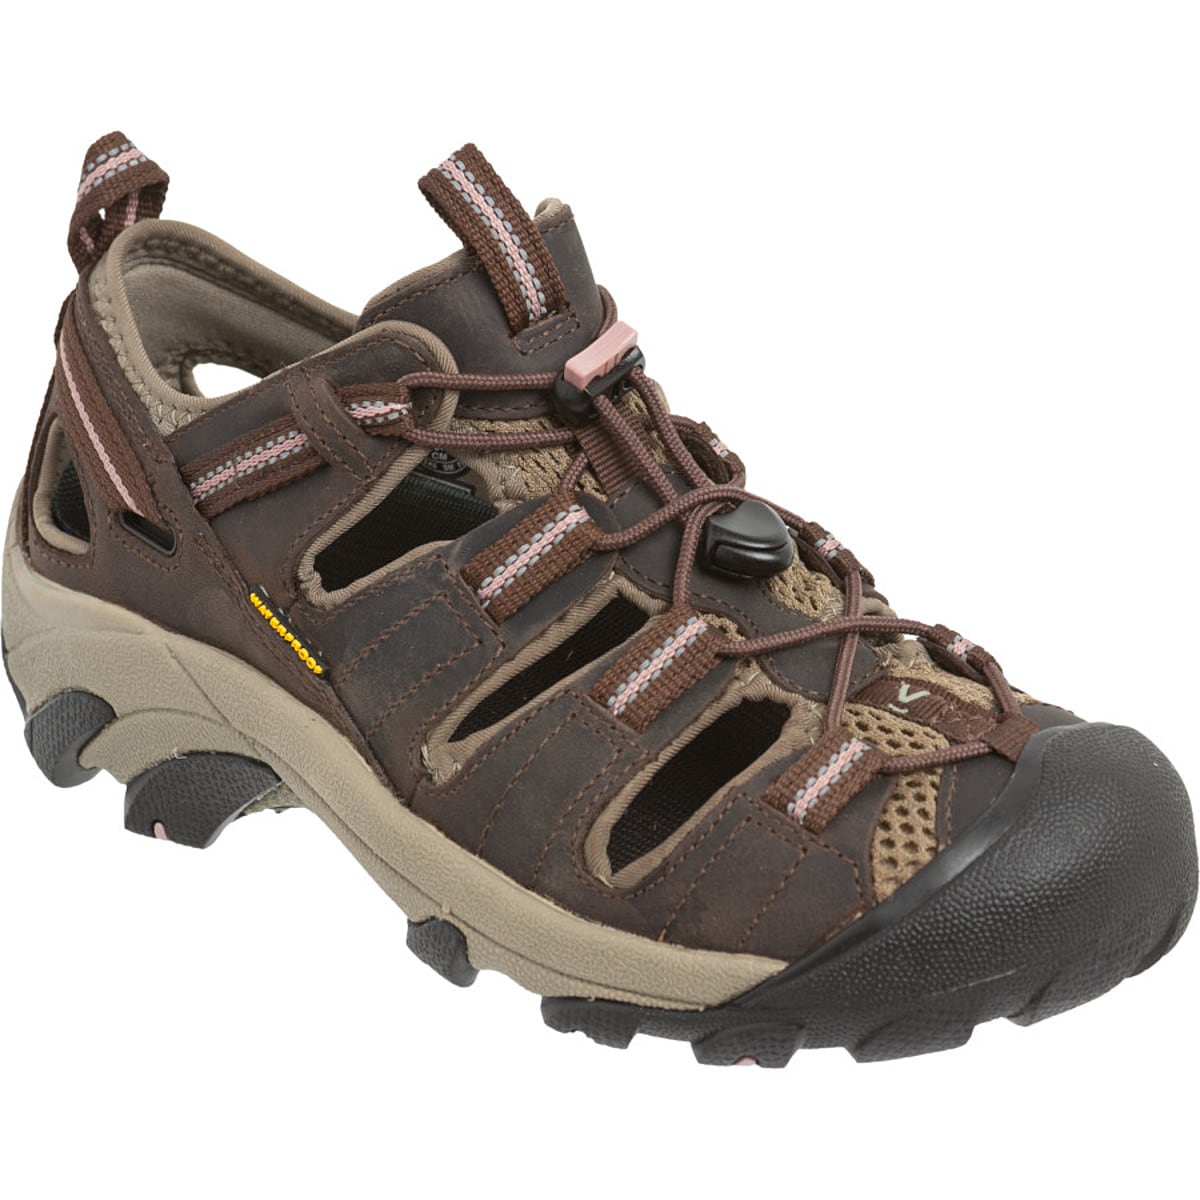 loom inference Samuel KEEN Arroyo II Hiking Shoe - Women's - Footwear